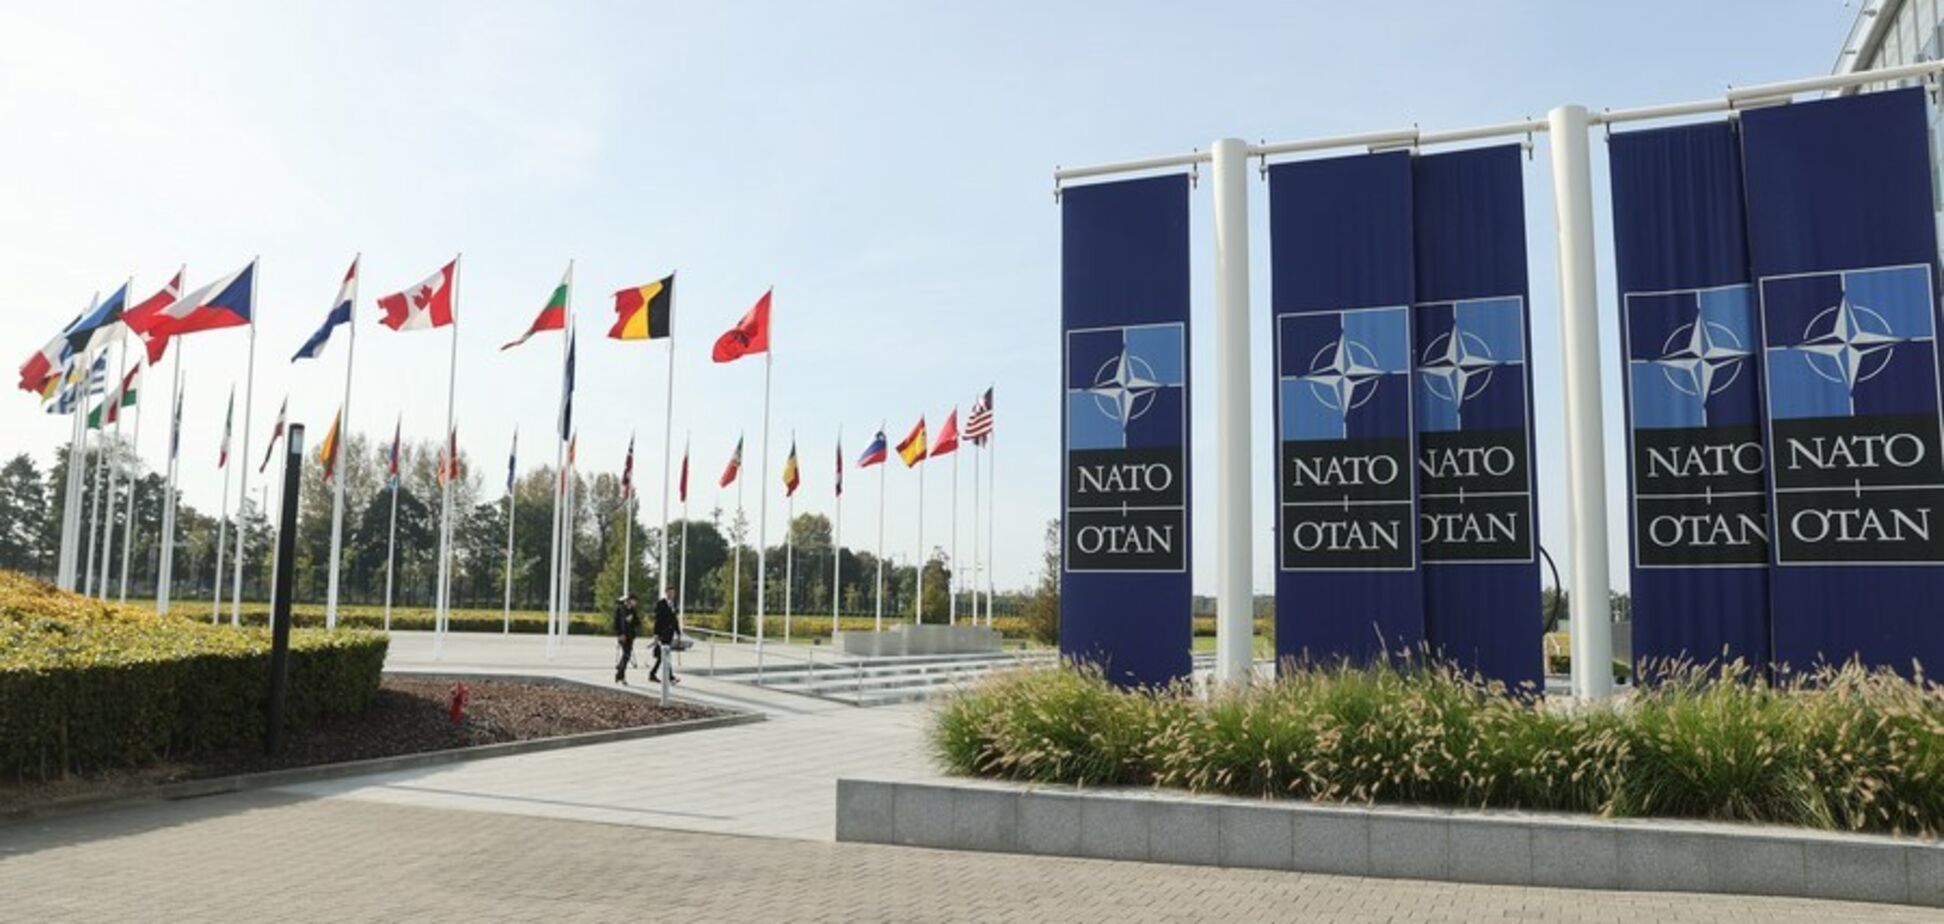 Через агресію Росії проти України нейтральні держави Європи хочуть зближення з НАТО